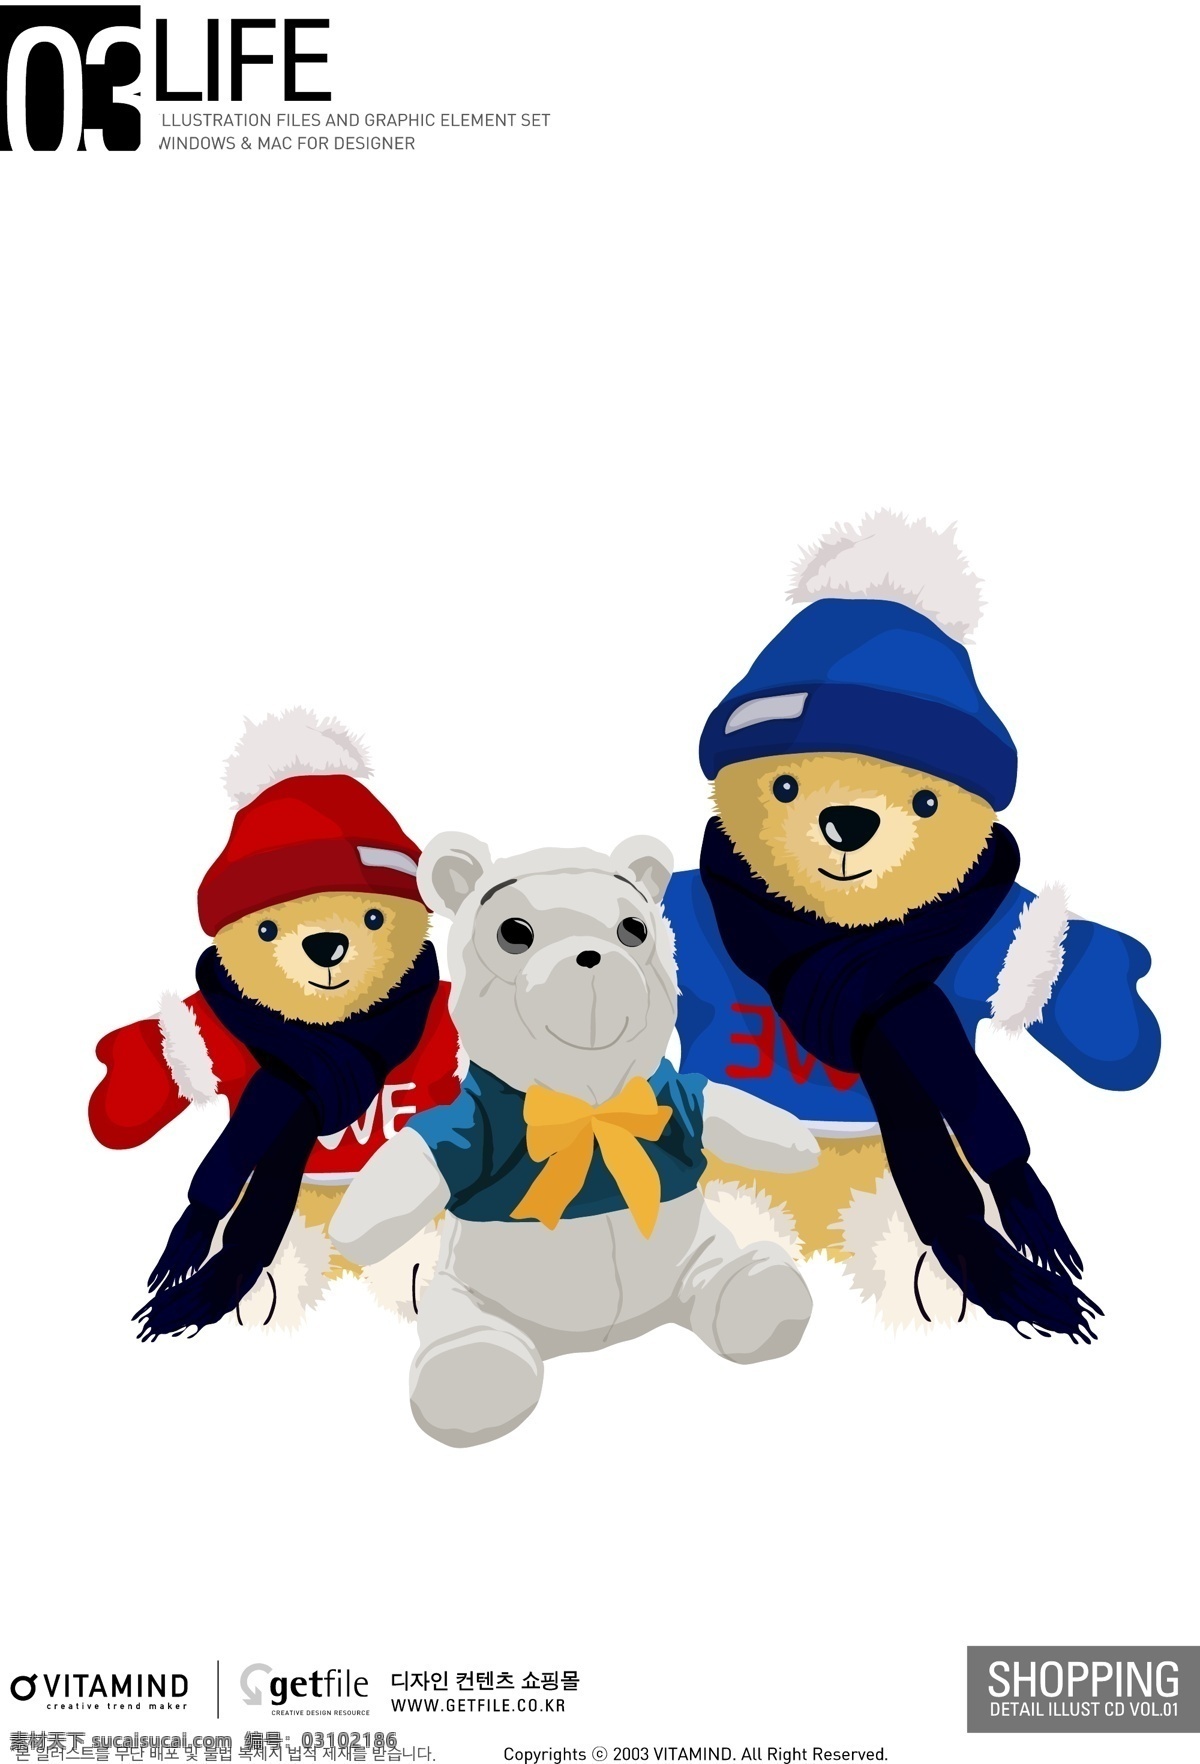 卡通 熊 卡通熊 生活百科 玩具熊 休闲娱乐 矢量 模板下载 蓝色熊 红色熊 灰色熊 psd源文件